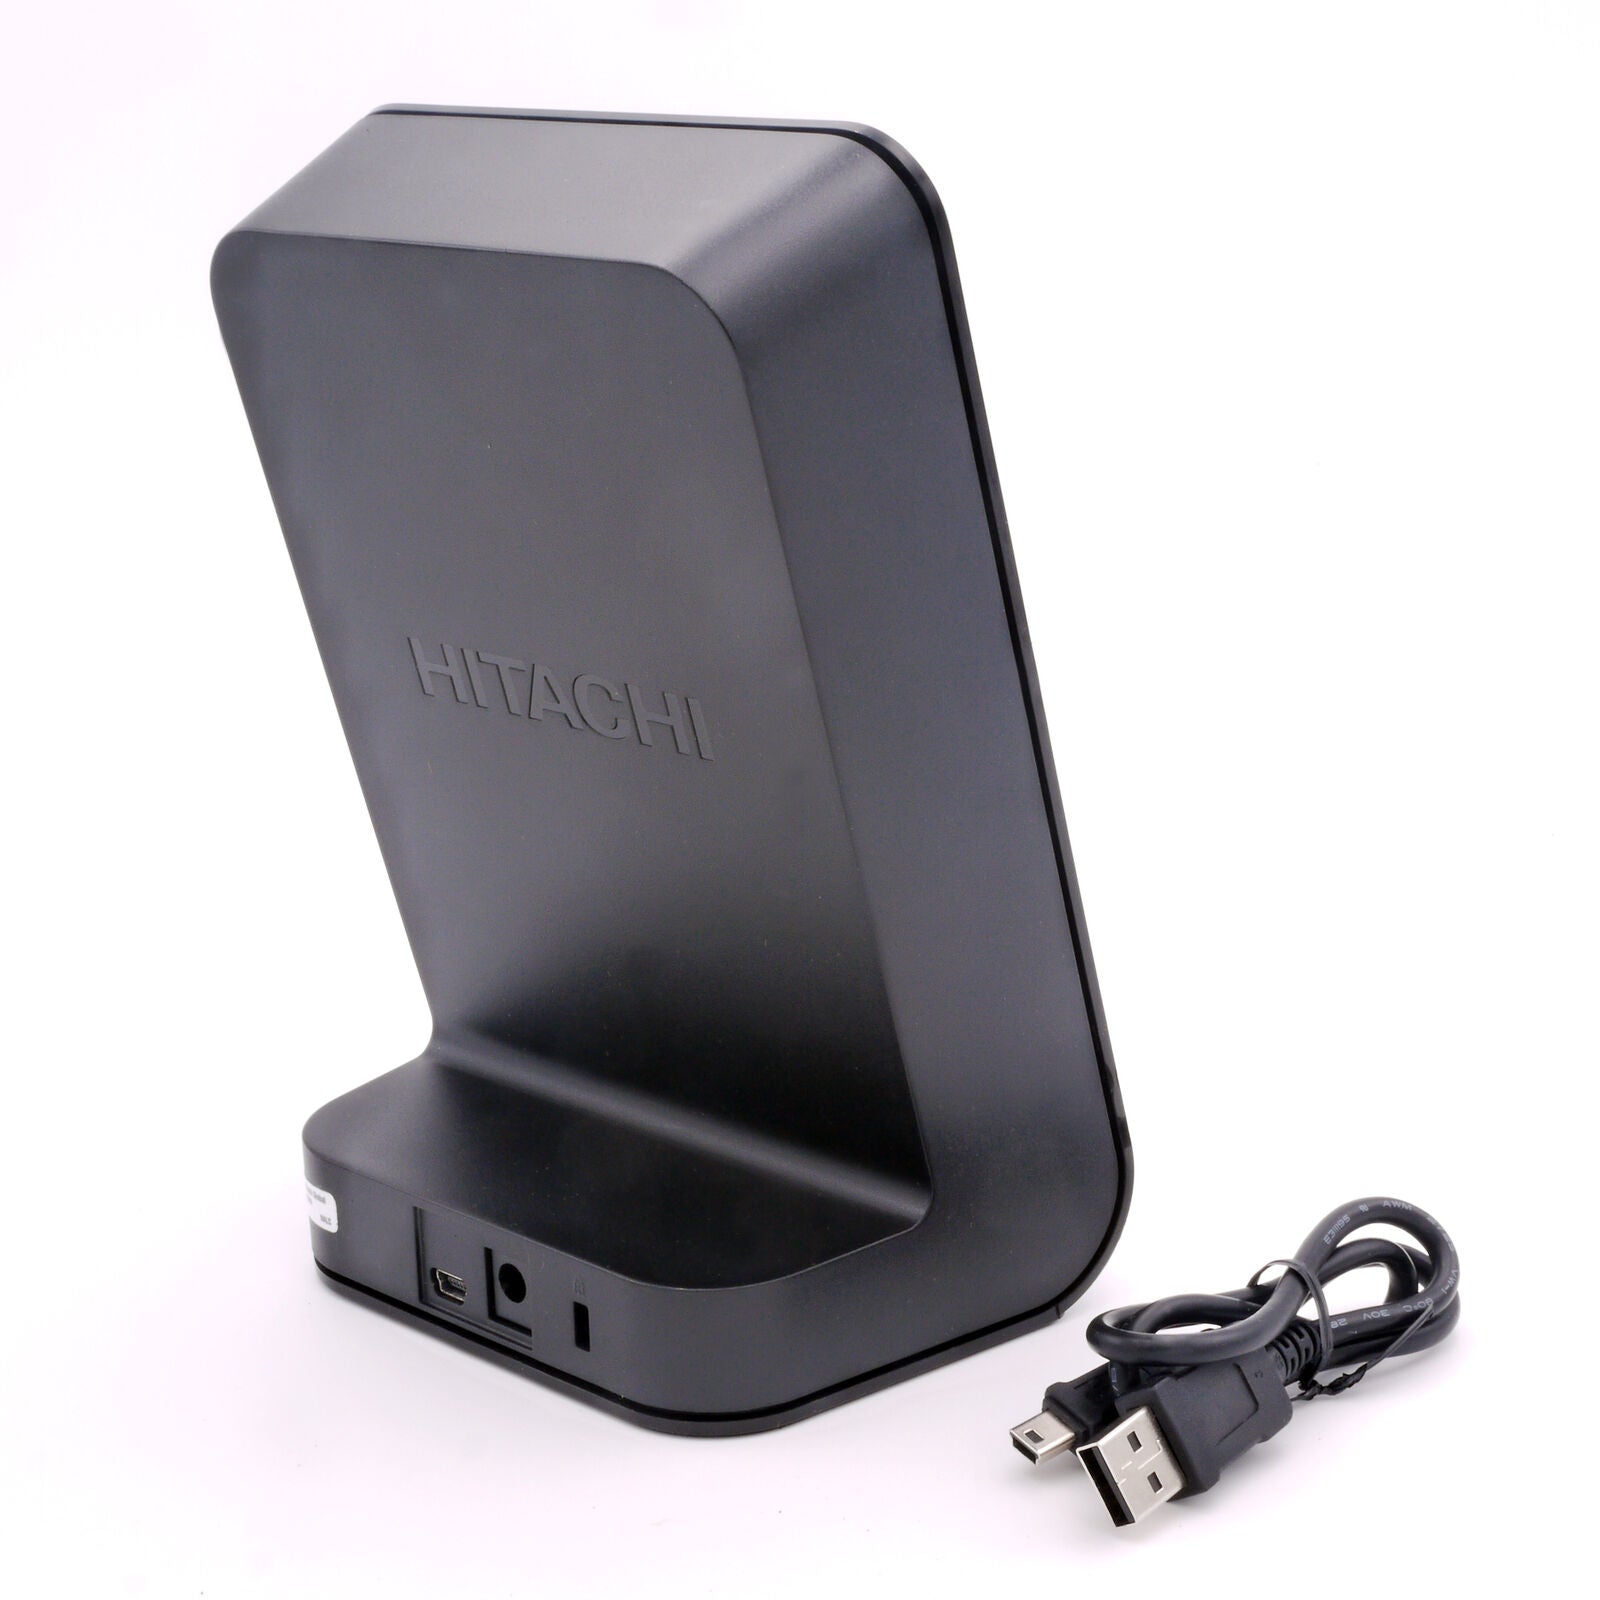 Hitachi Life Studio 3.5" Portable External Hard Drive 1TB USB 2.0 for PC, Laptop